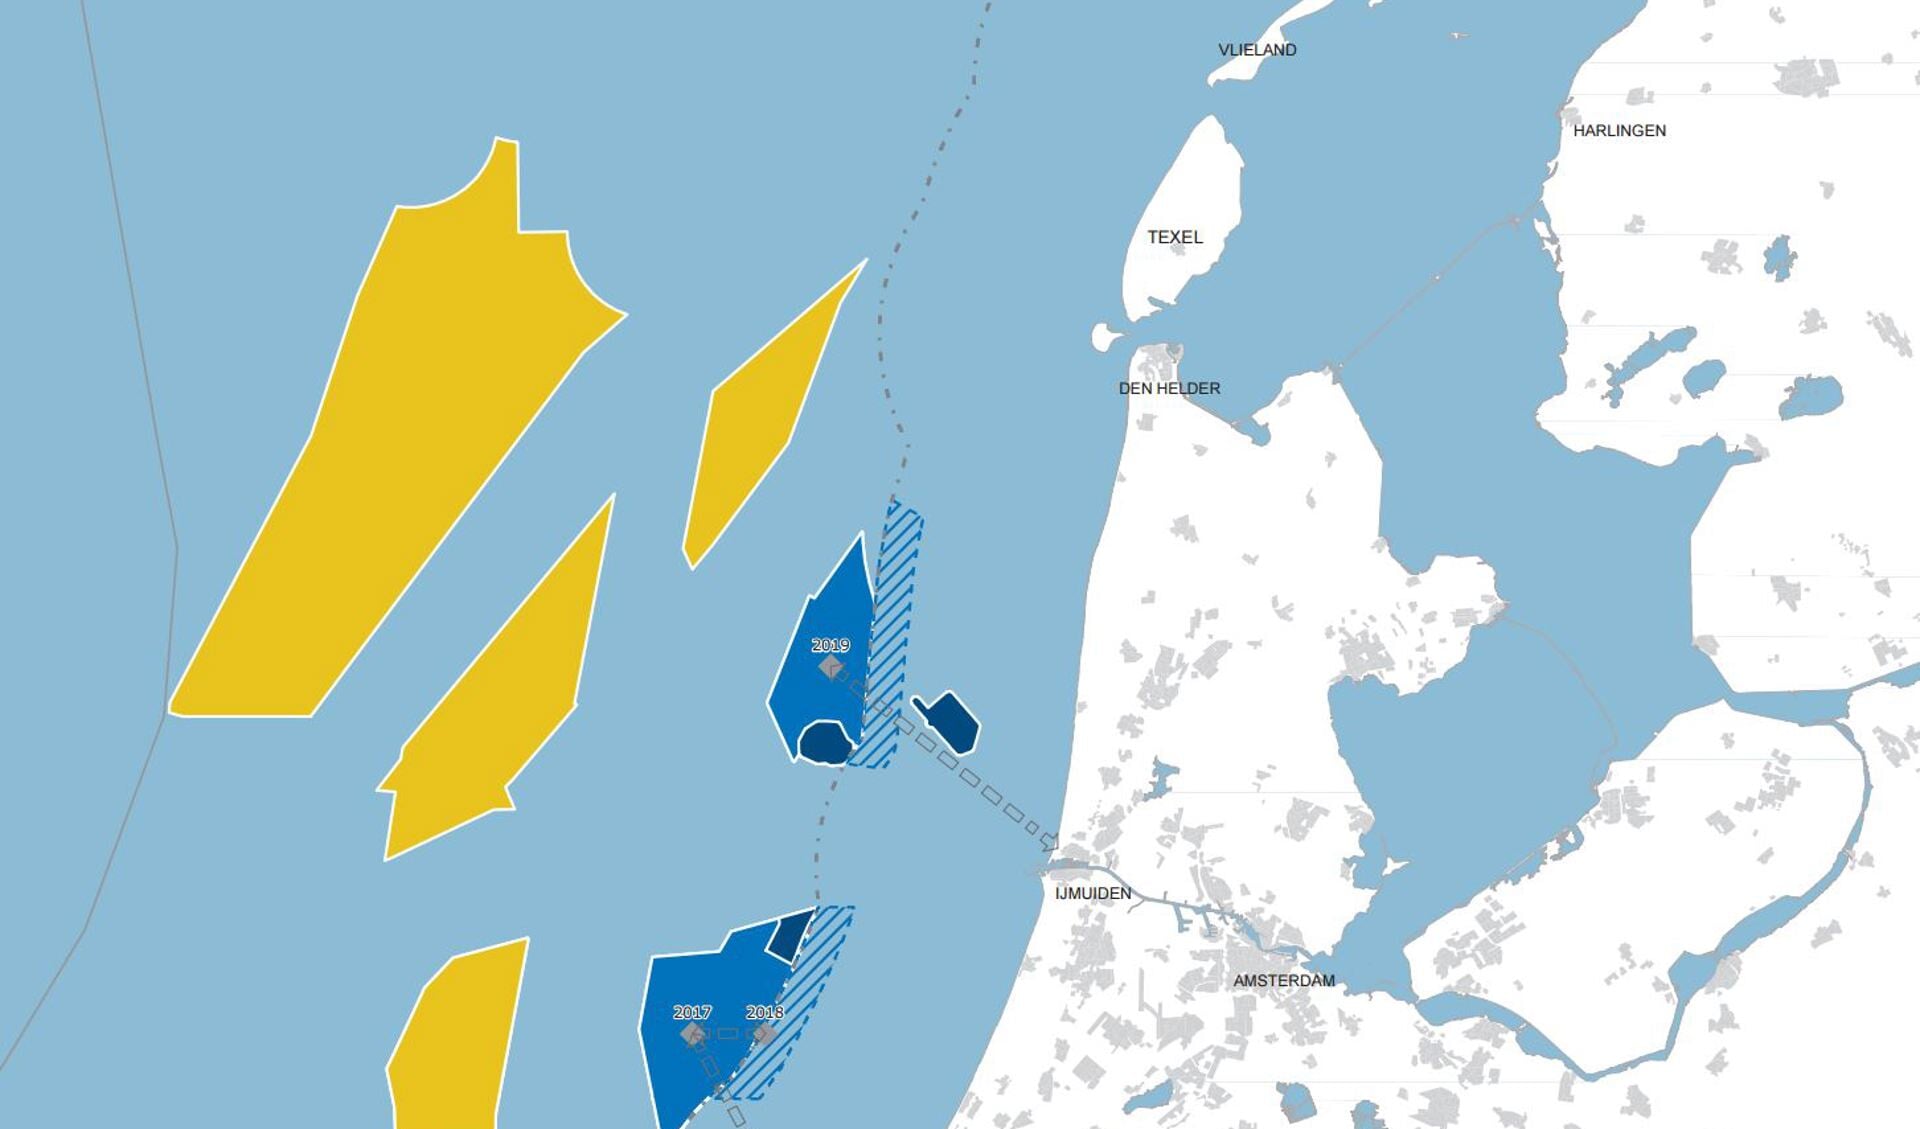 In het blauw twee gebieden die zijn aangewezen voor windmolens. Gearceerd twee gebieden die in beeld zijn om windmolens te plaatsen. (Afbeelding www.noordzeeloket.nl)